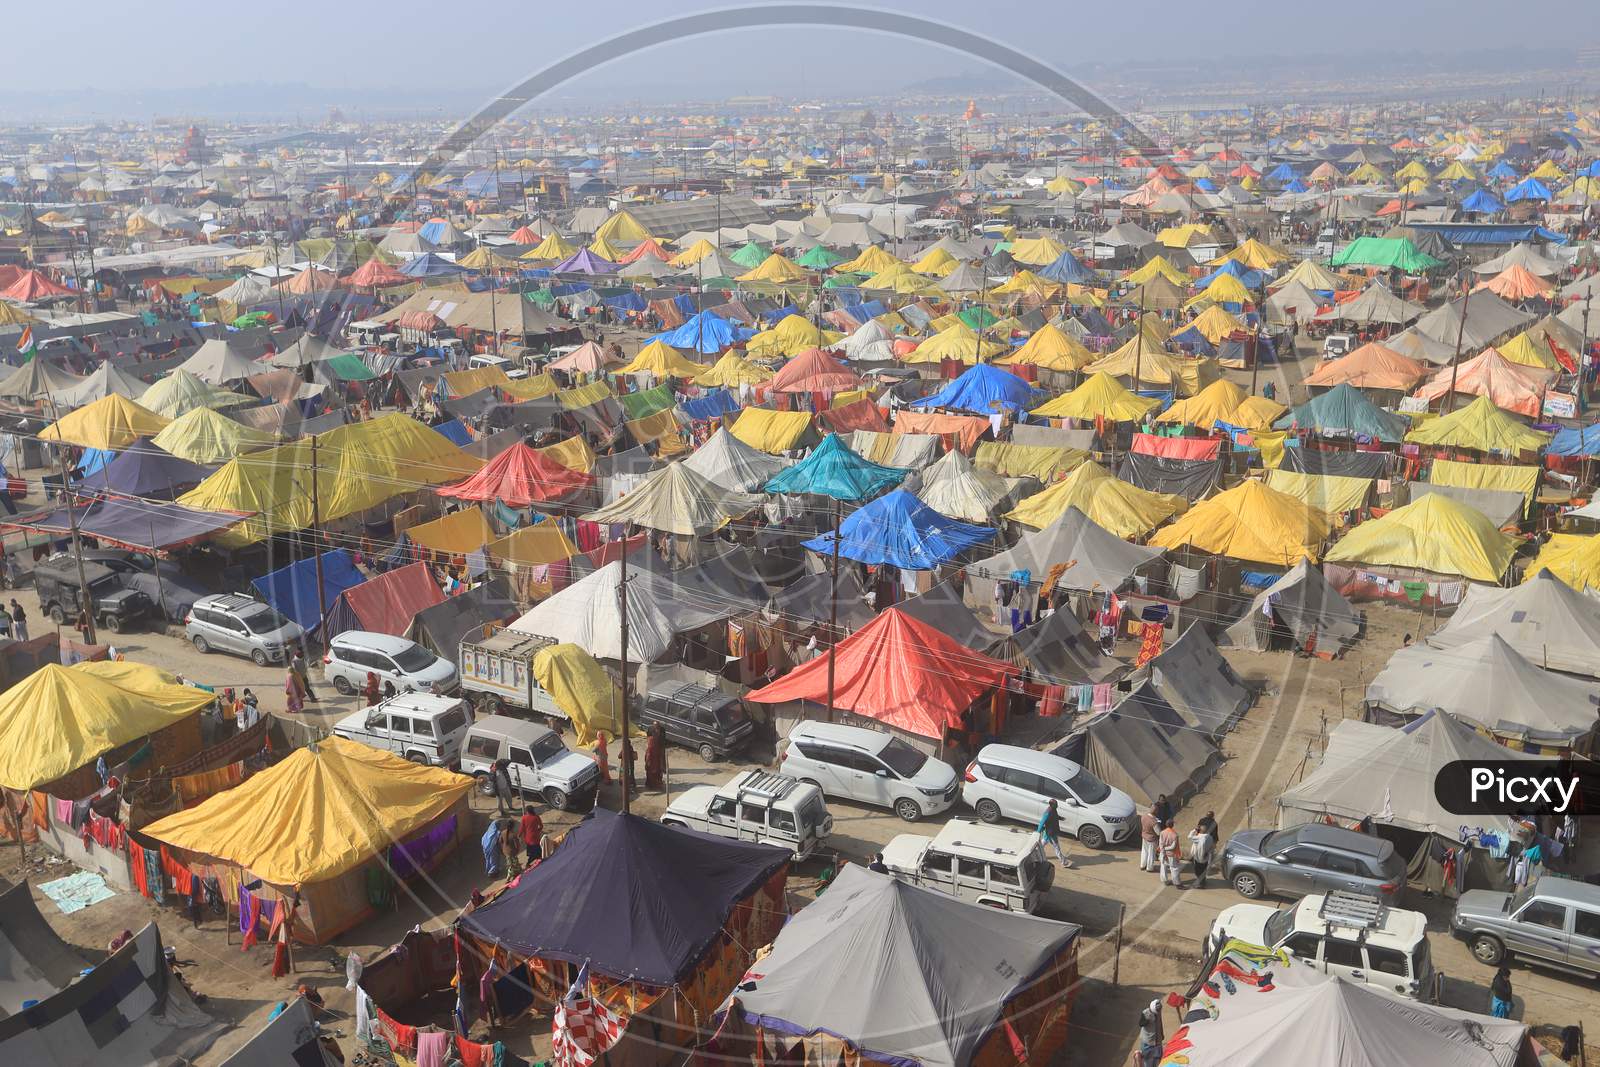 Tents Or Shelters Arranged At Prayag raj  During Magh Mela